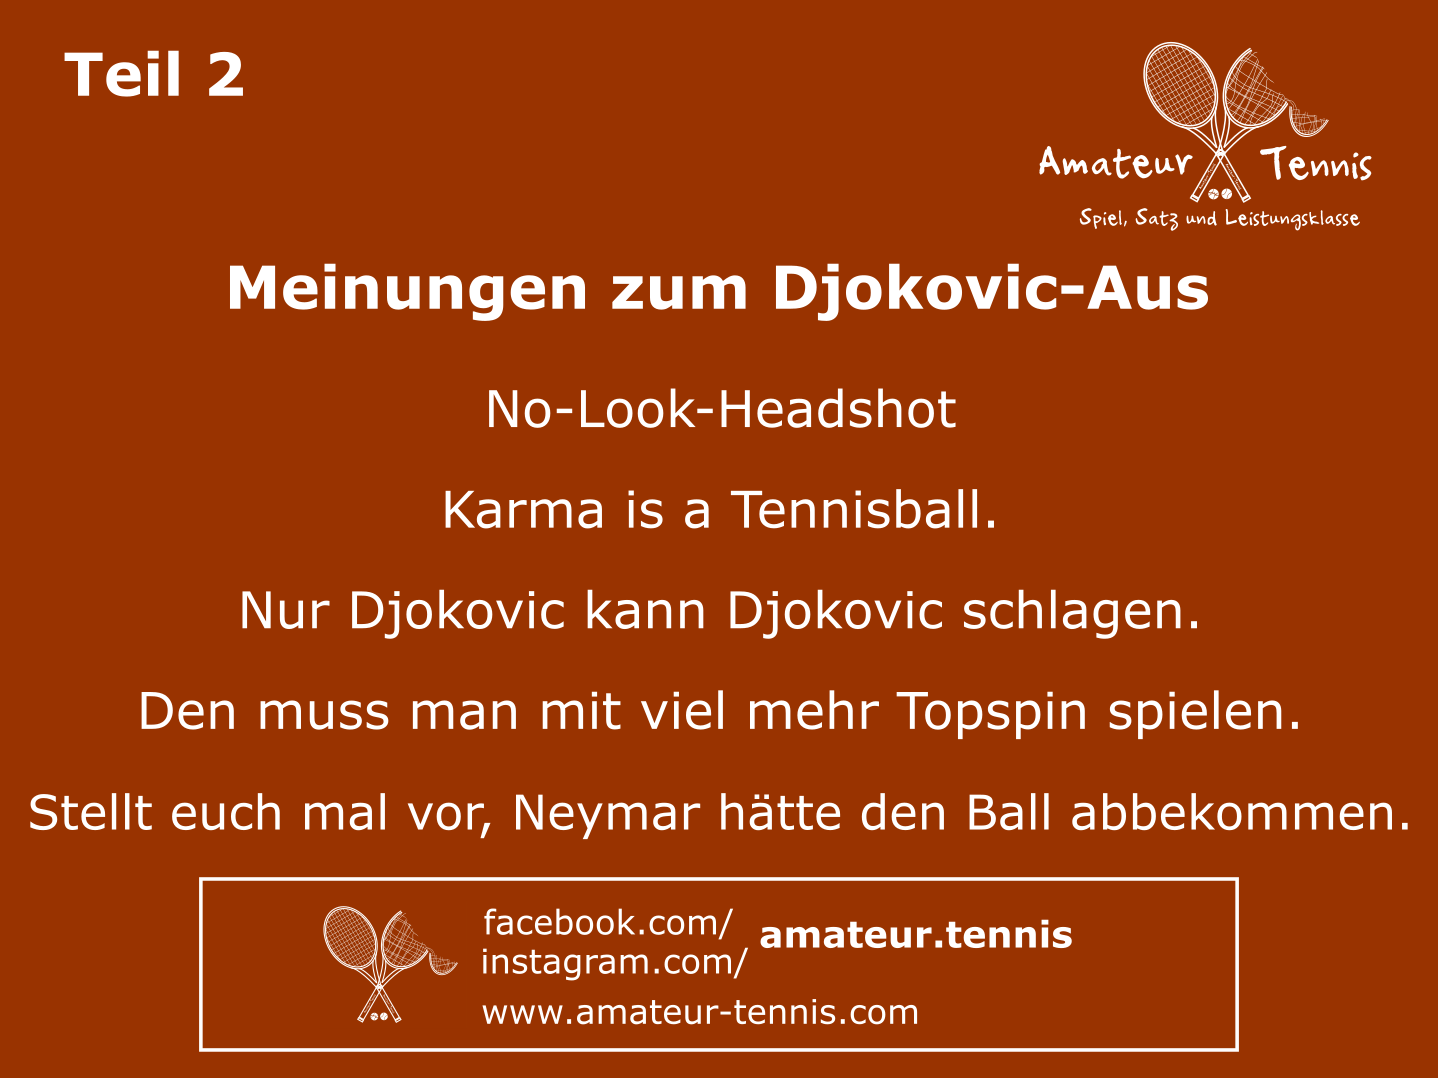 Djokovic-Aus Teil 2